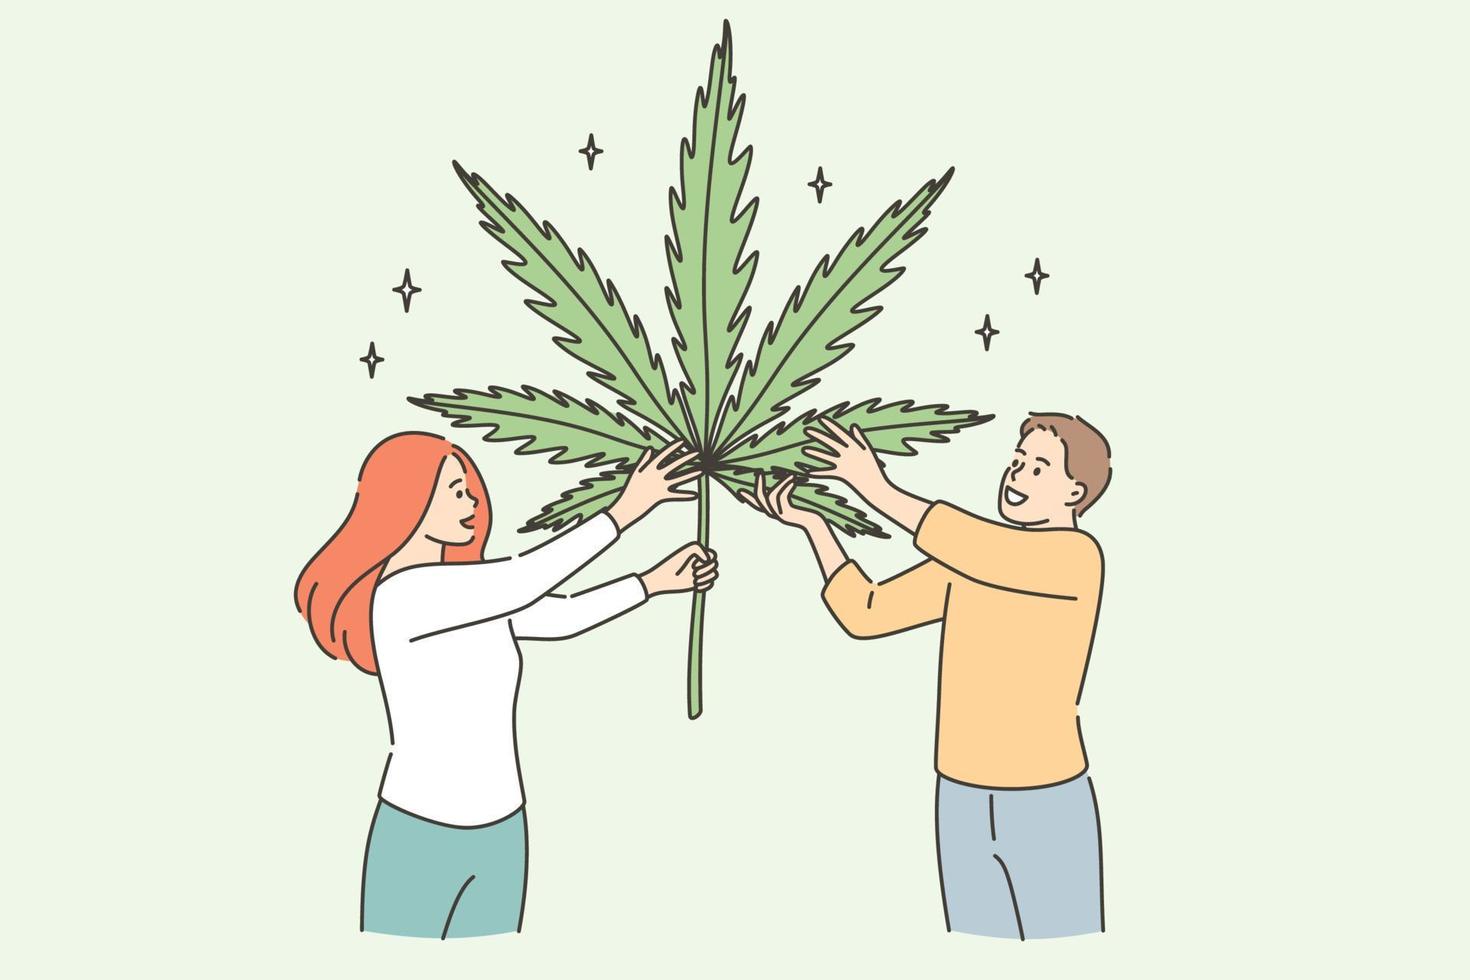 creciente concepto de medicina herbaria de marihuana. dos jóvenes sonrientes personajes de dibujos animados de pie sosteniendo una enorme hoja de marihuana en las manos ilustración vectorial vector